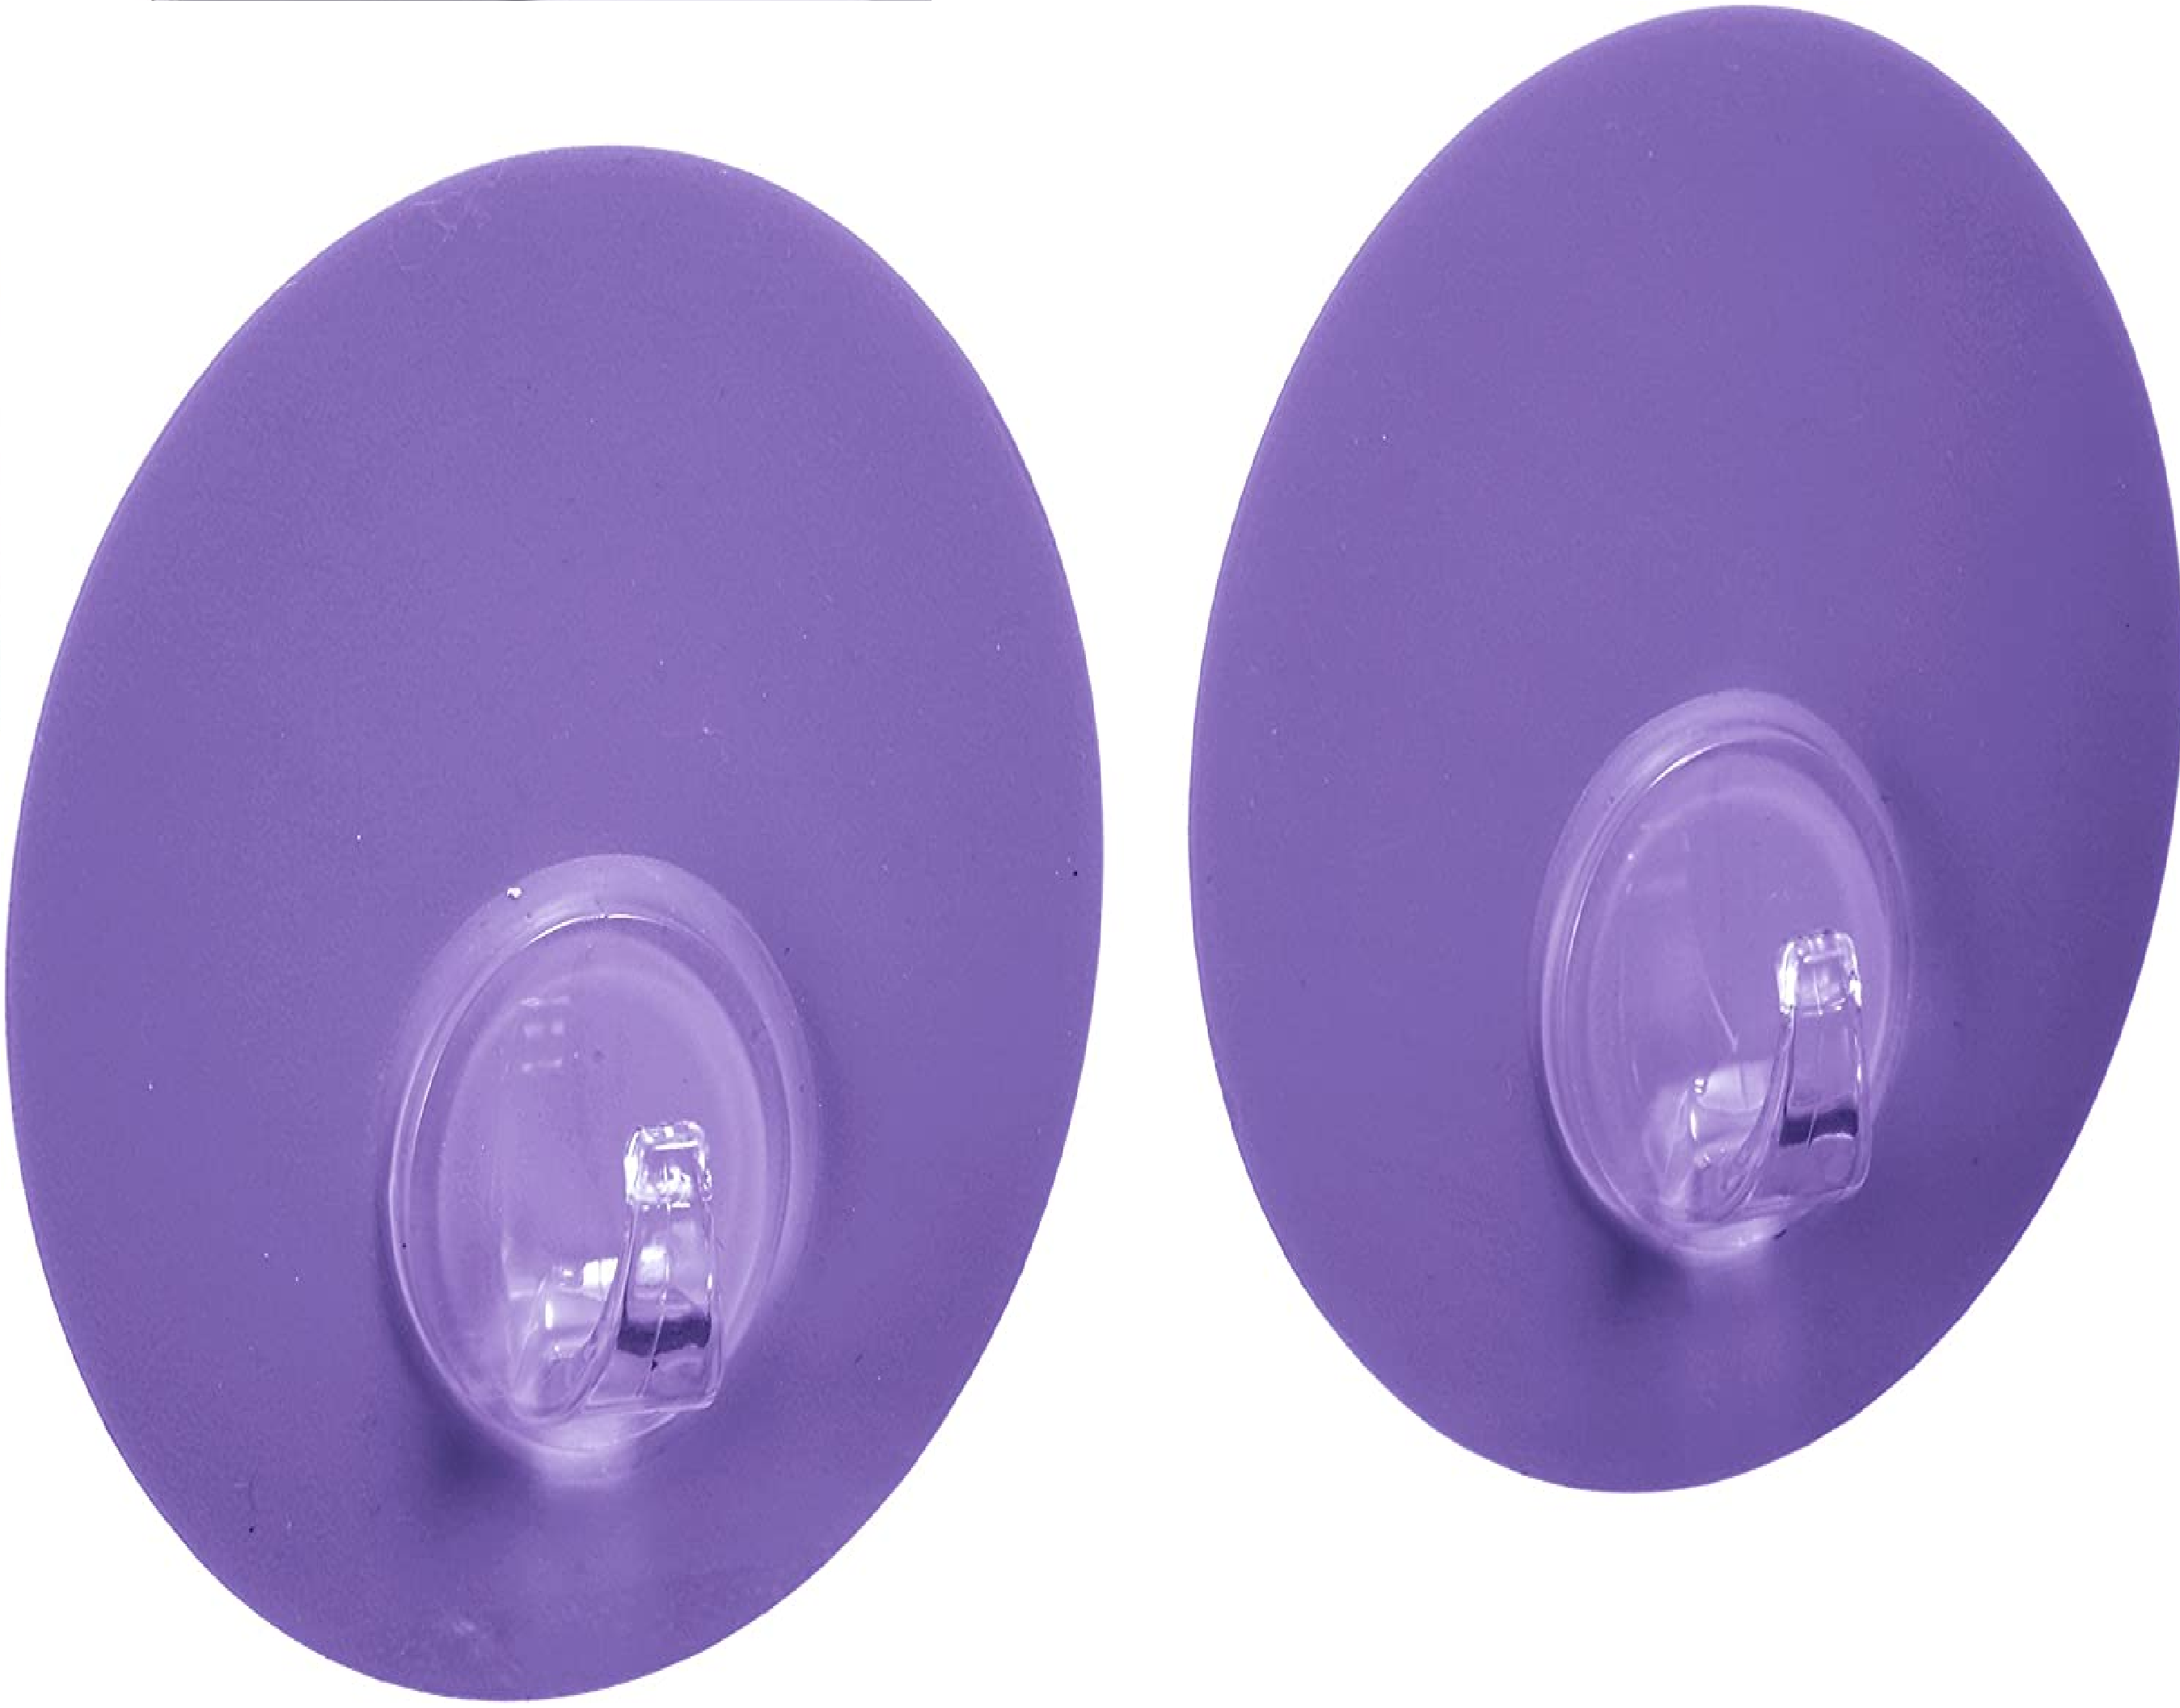 Static-Loc Aufbewahrungskorb Fermo Purple - Badkorb, Befestigen ohne bohren, Kunststoff - Polypropylen, 20.5 x 14.5 x 14 cm, Lila